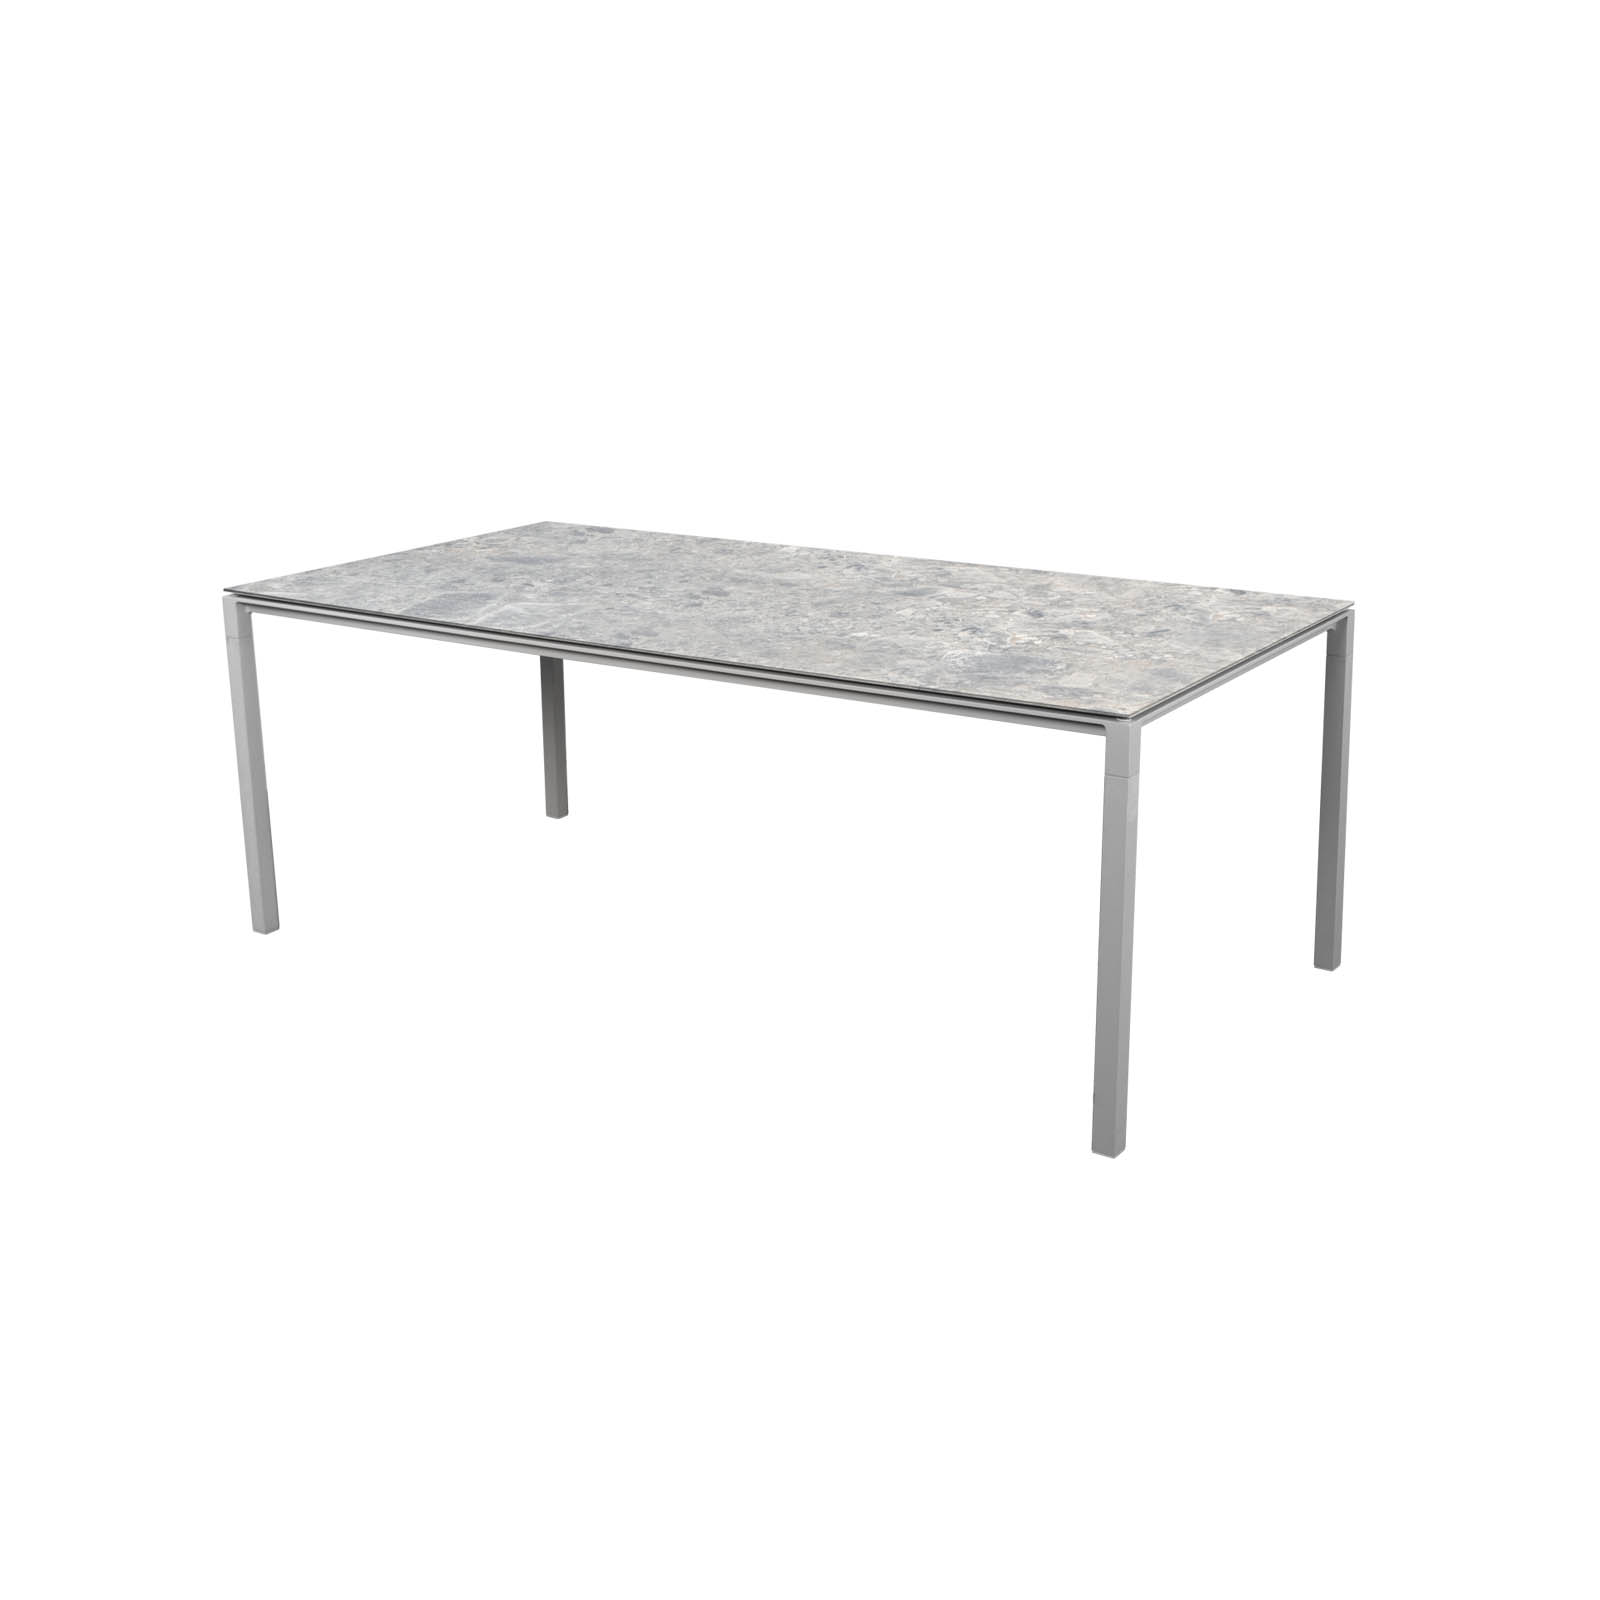 Tisch 200x100 cm Pure aus Aluminium in Light Grey mit Tischplatte aus Ceramic in Multi Colour